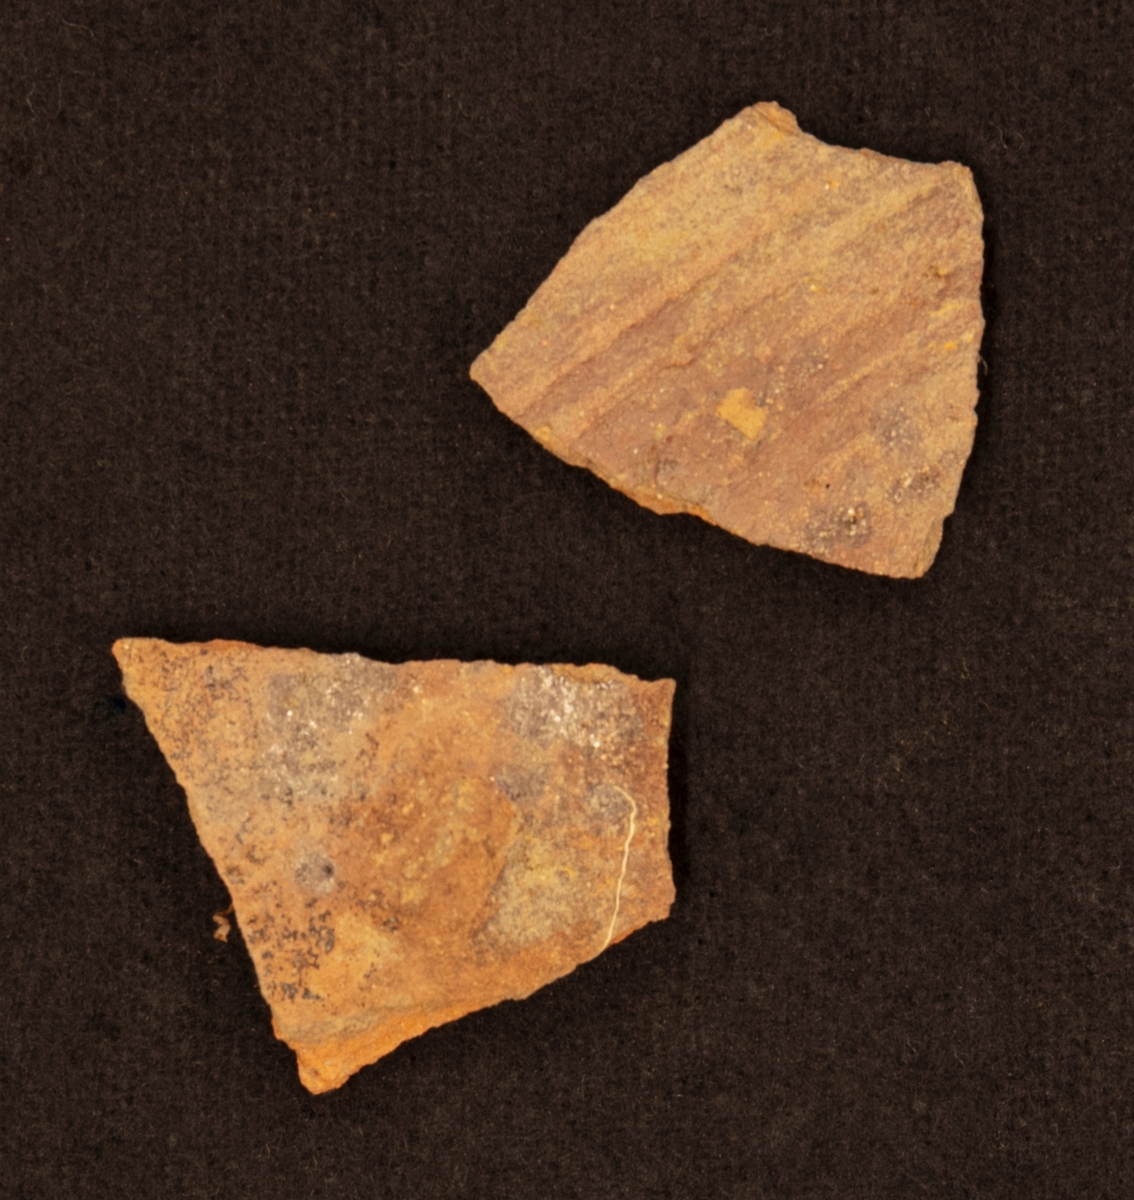 Fragment av buk av lergods. Rödgods med brun glasyr.

Funnen i anläggning S16.
Grävningsledaren ändrade sedan anläggningsbeteckningen i grävrapporten till K16.
Fynden kommer från en arkeologisk utgrävning/schaktövervakning av Brätte 1:8 ledd av Oscar Ortman 2018.